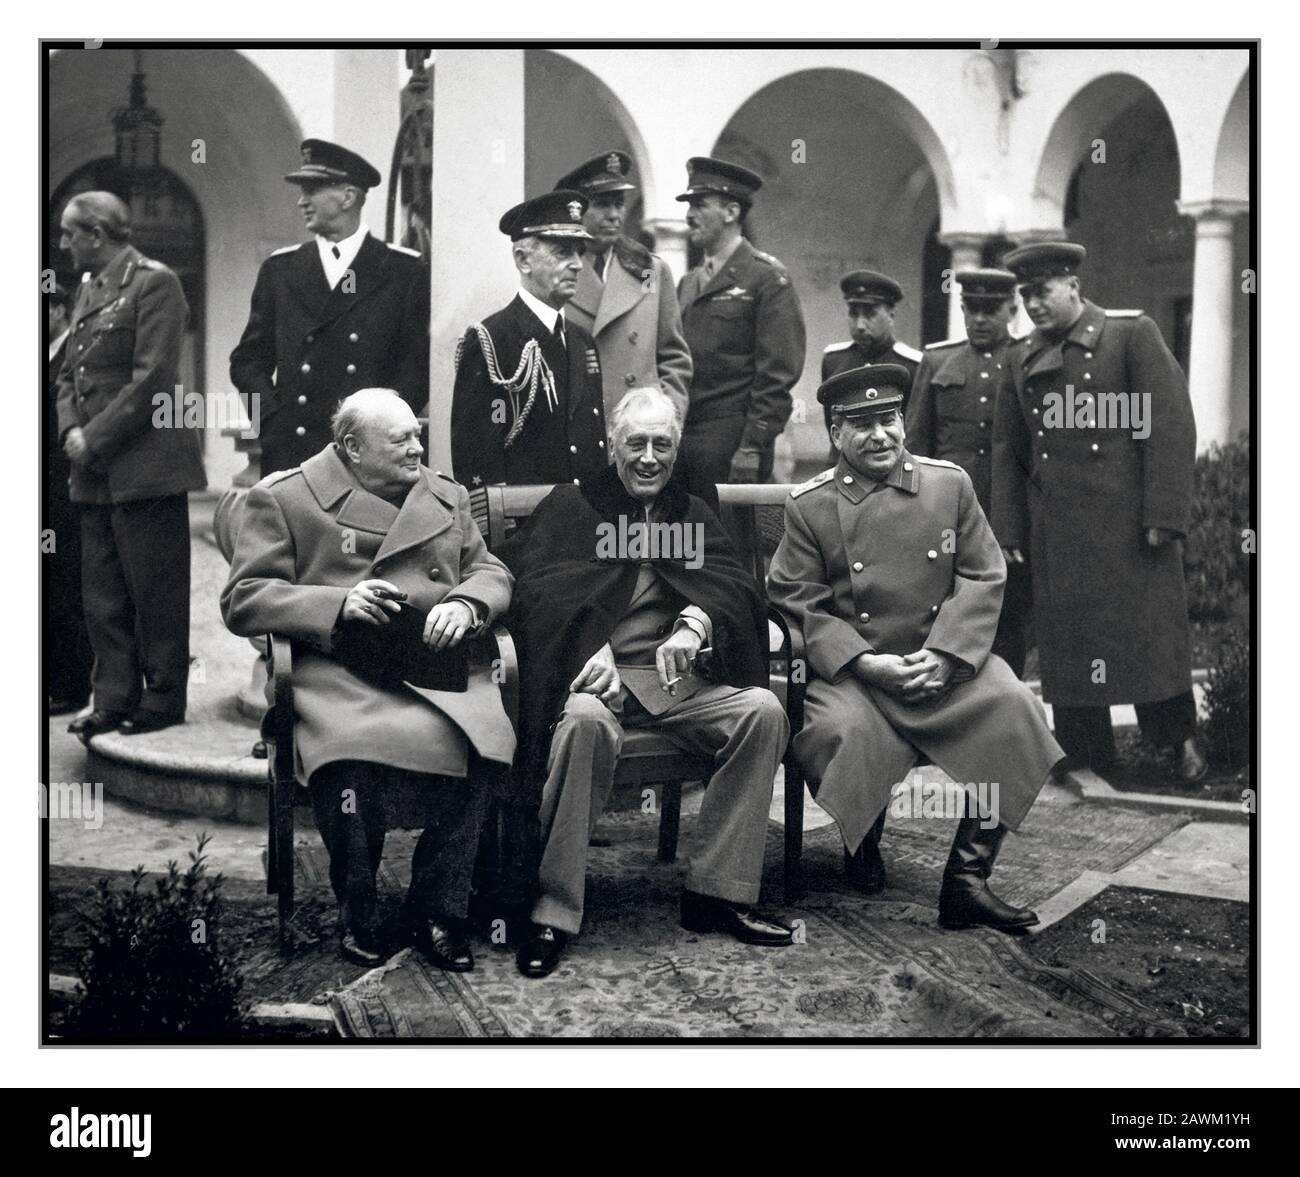 Yalta 1945 Segunda Guerra Mundial Conferencia de Los ‘Tres grandes’ en Yalta hacer planes finales para la derrota de Alemania. Aquí los "Tres grandes" están felizmente sentados juntos en el patio, el primer Ministro Winston S. Churchill, el Presidente Franklin D. Roosevelt y el primer Ministro Josef Stalin. Febrero De 1945. Foto de stock